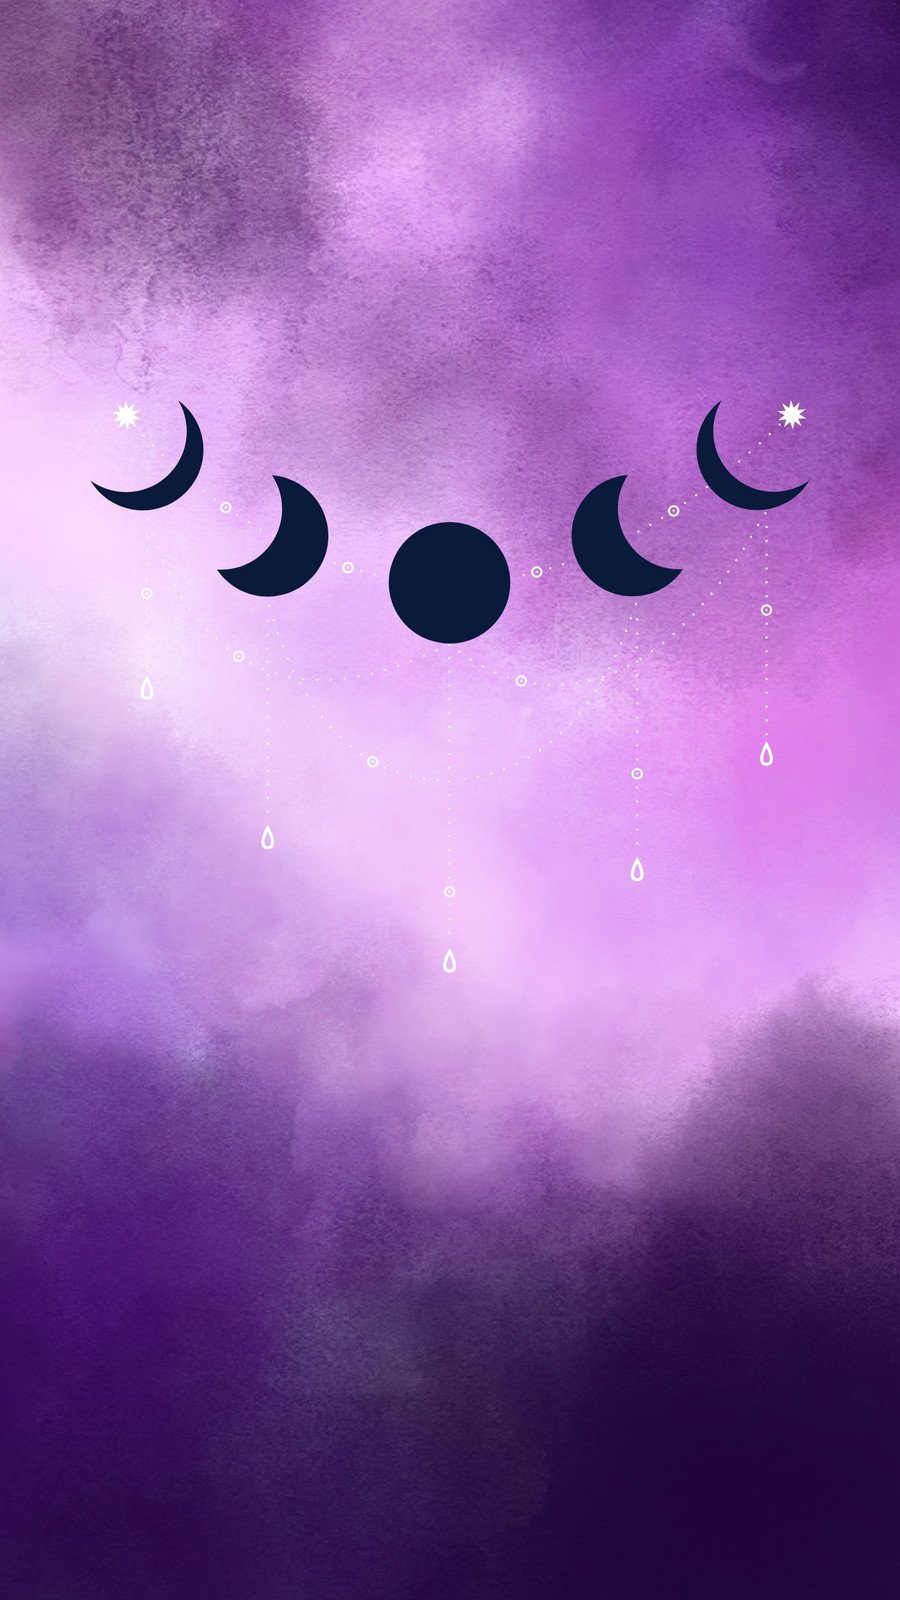 HD wallpaper purple moon violet stars light sky ship moonlight  darkness  Wallpaper Flare